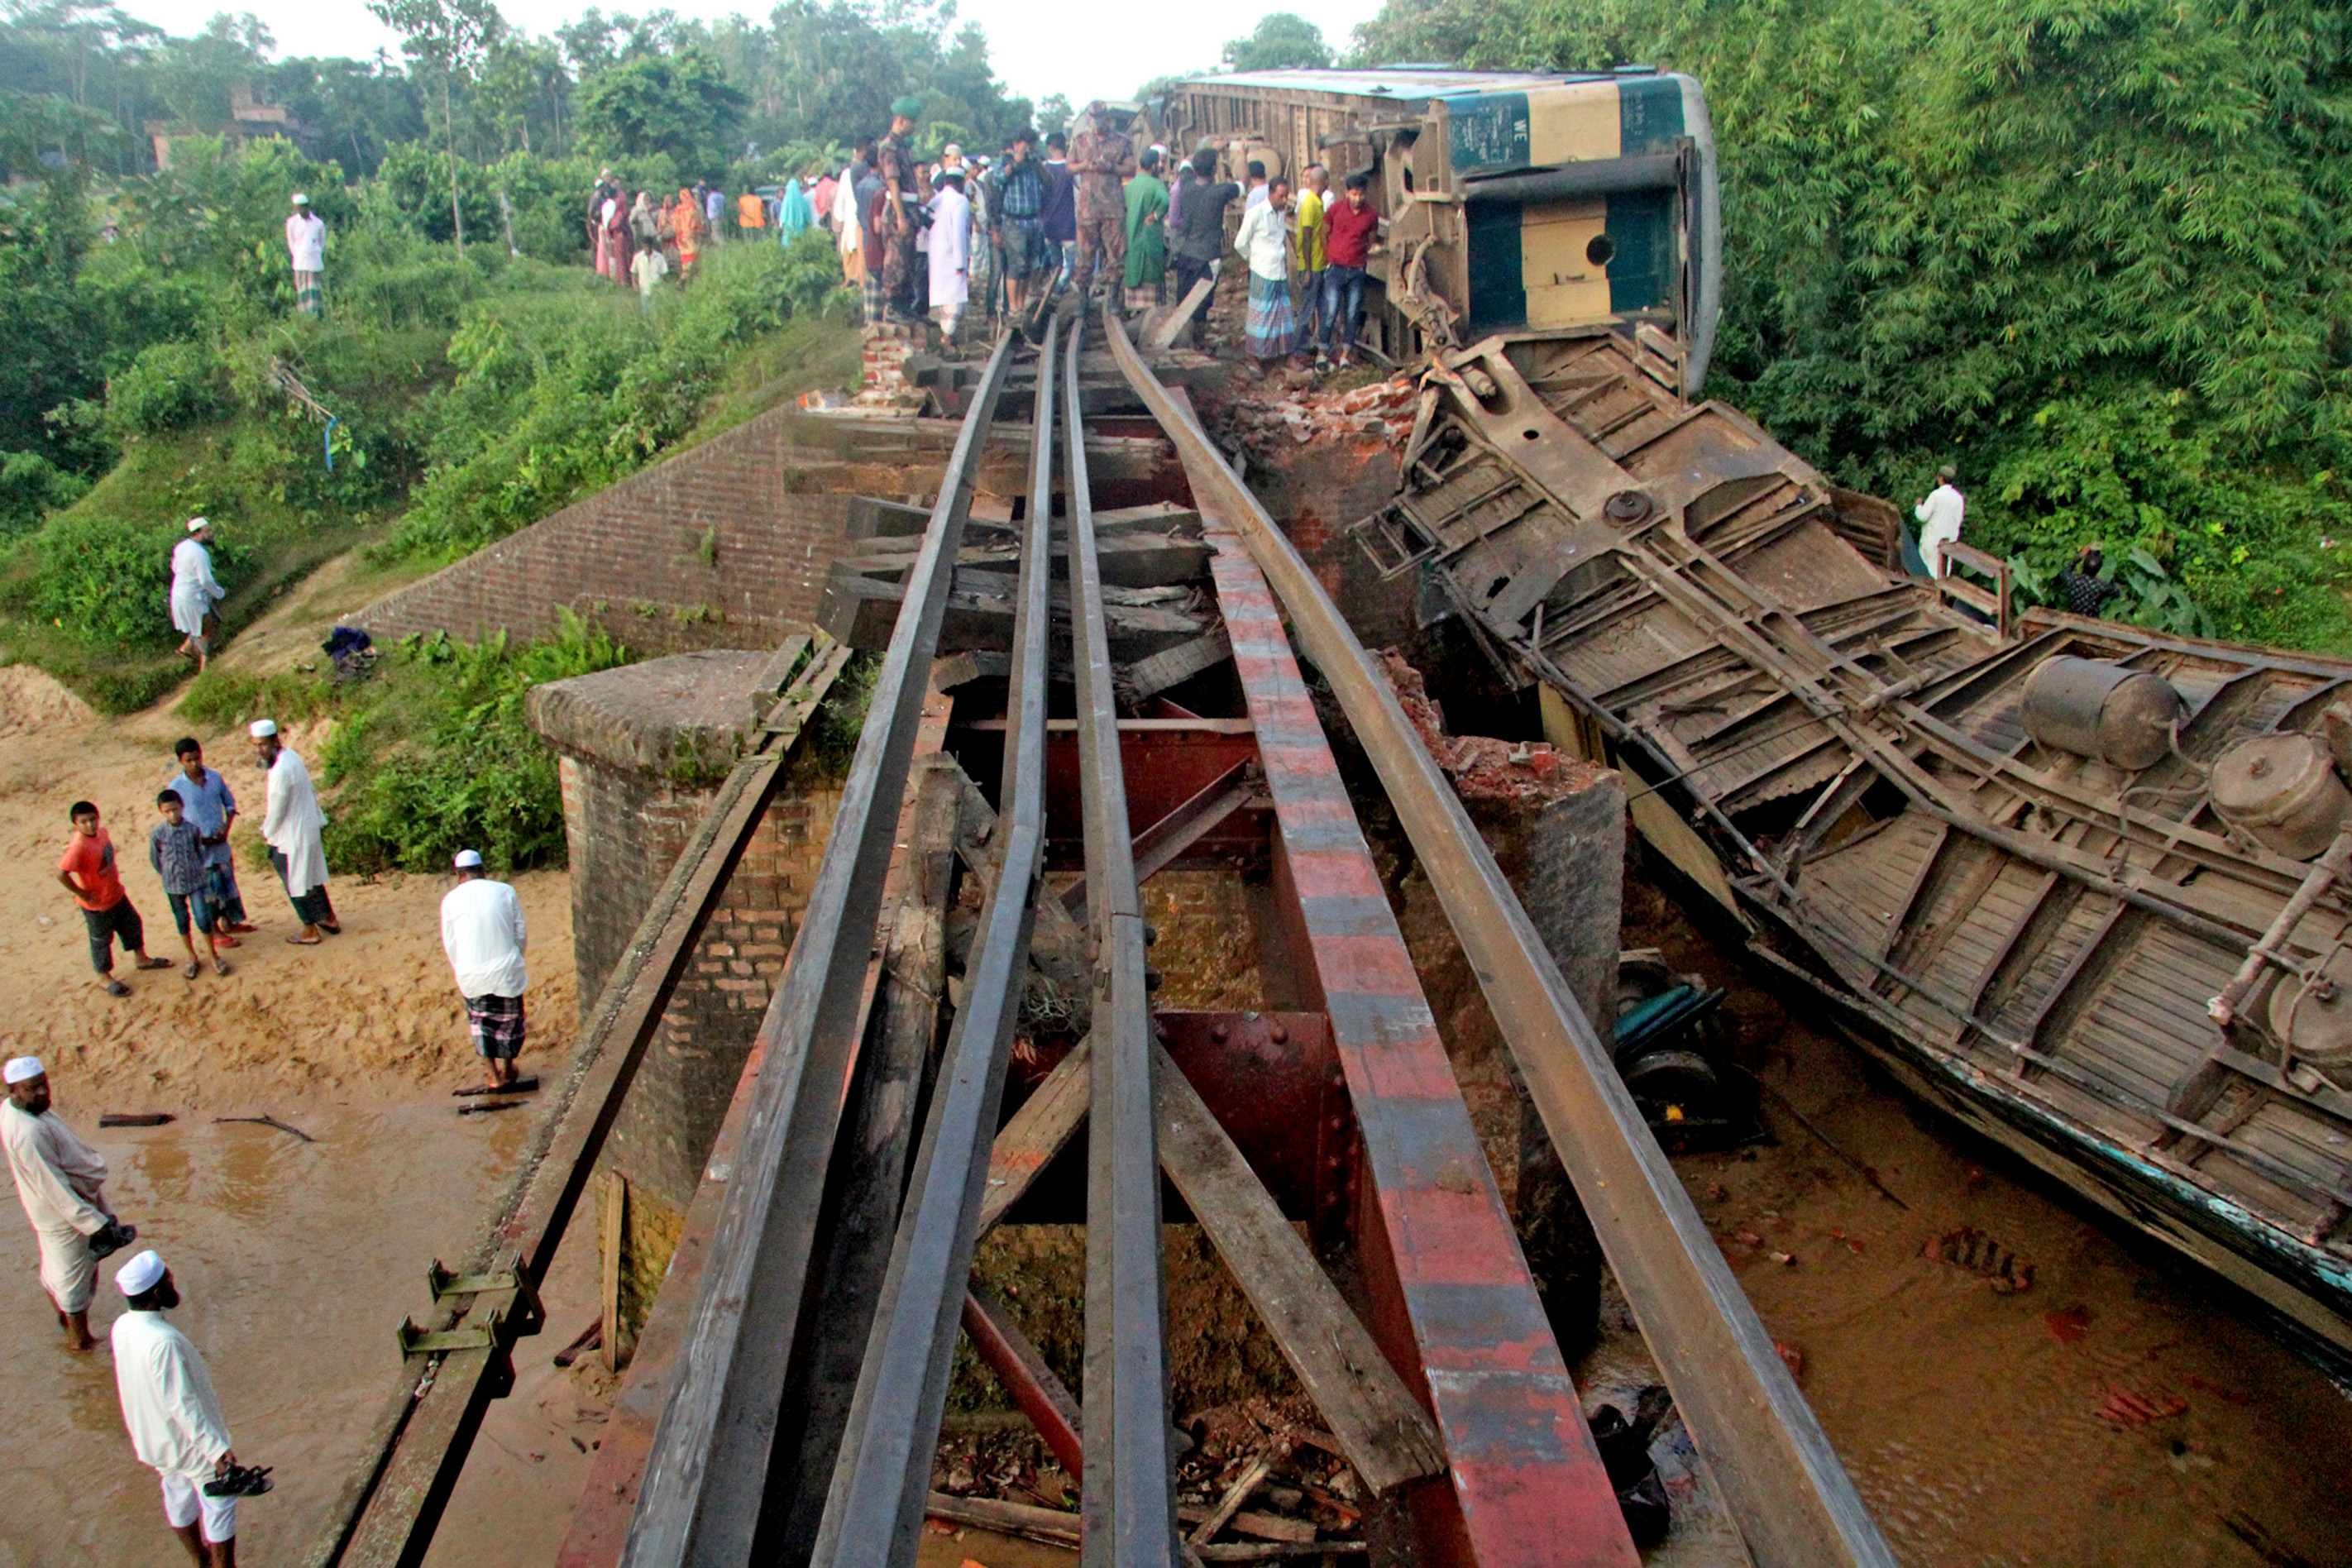 孟加拉国一客运列车脱轨造成至少4人死亡